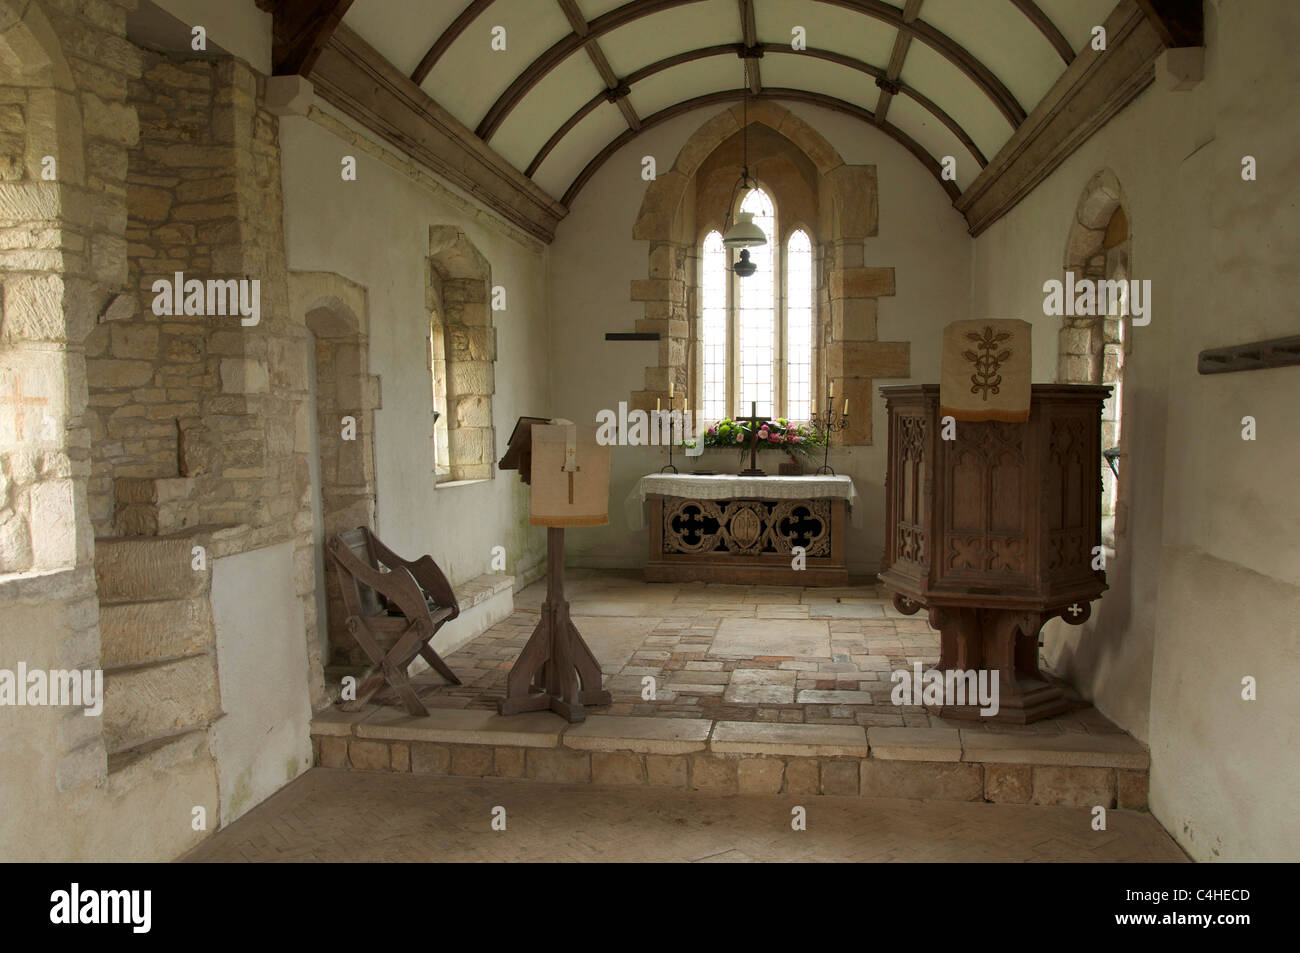 Le choeur de l'église du 12ème siècle à whitcombe près de Dorchester. Le poète William Barnes a été vicaire ici de 1847 à 1852. dorset, UK. Banque D'Images